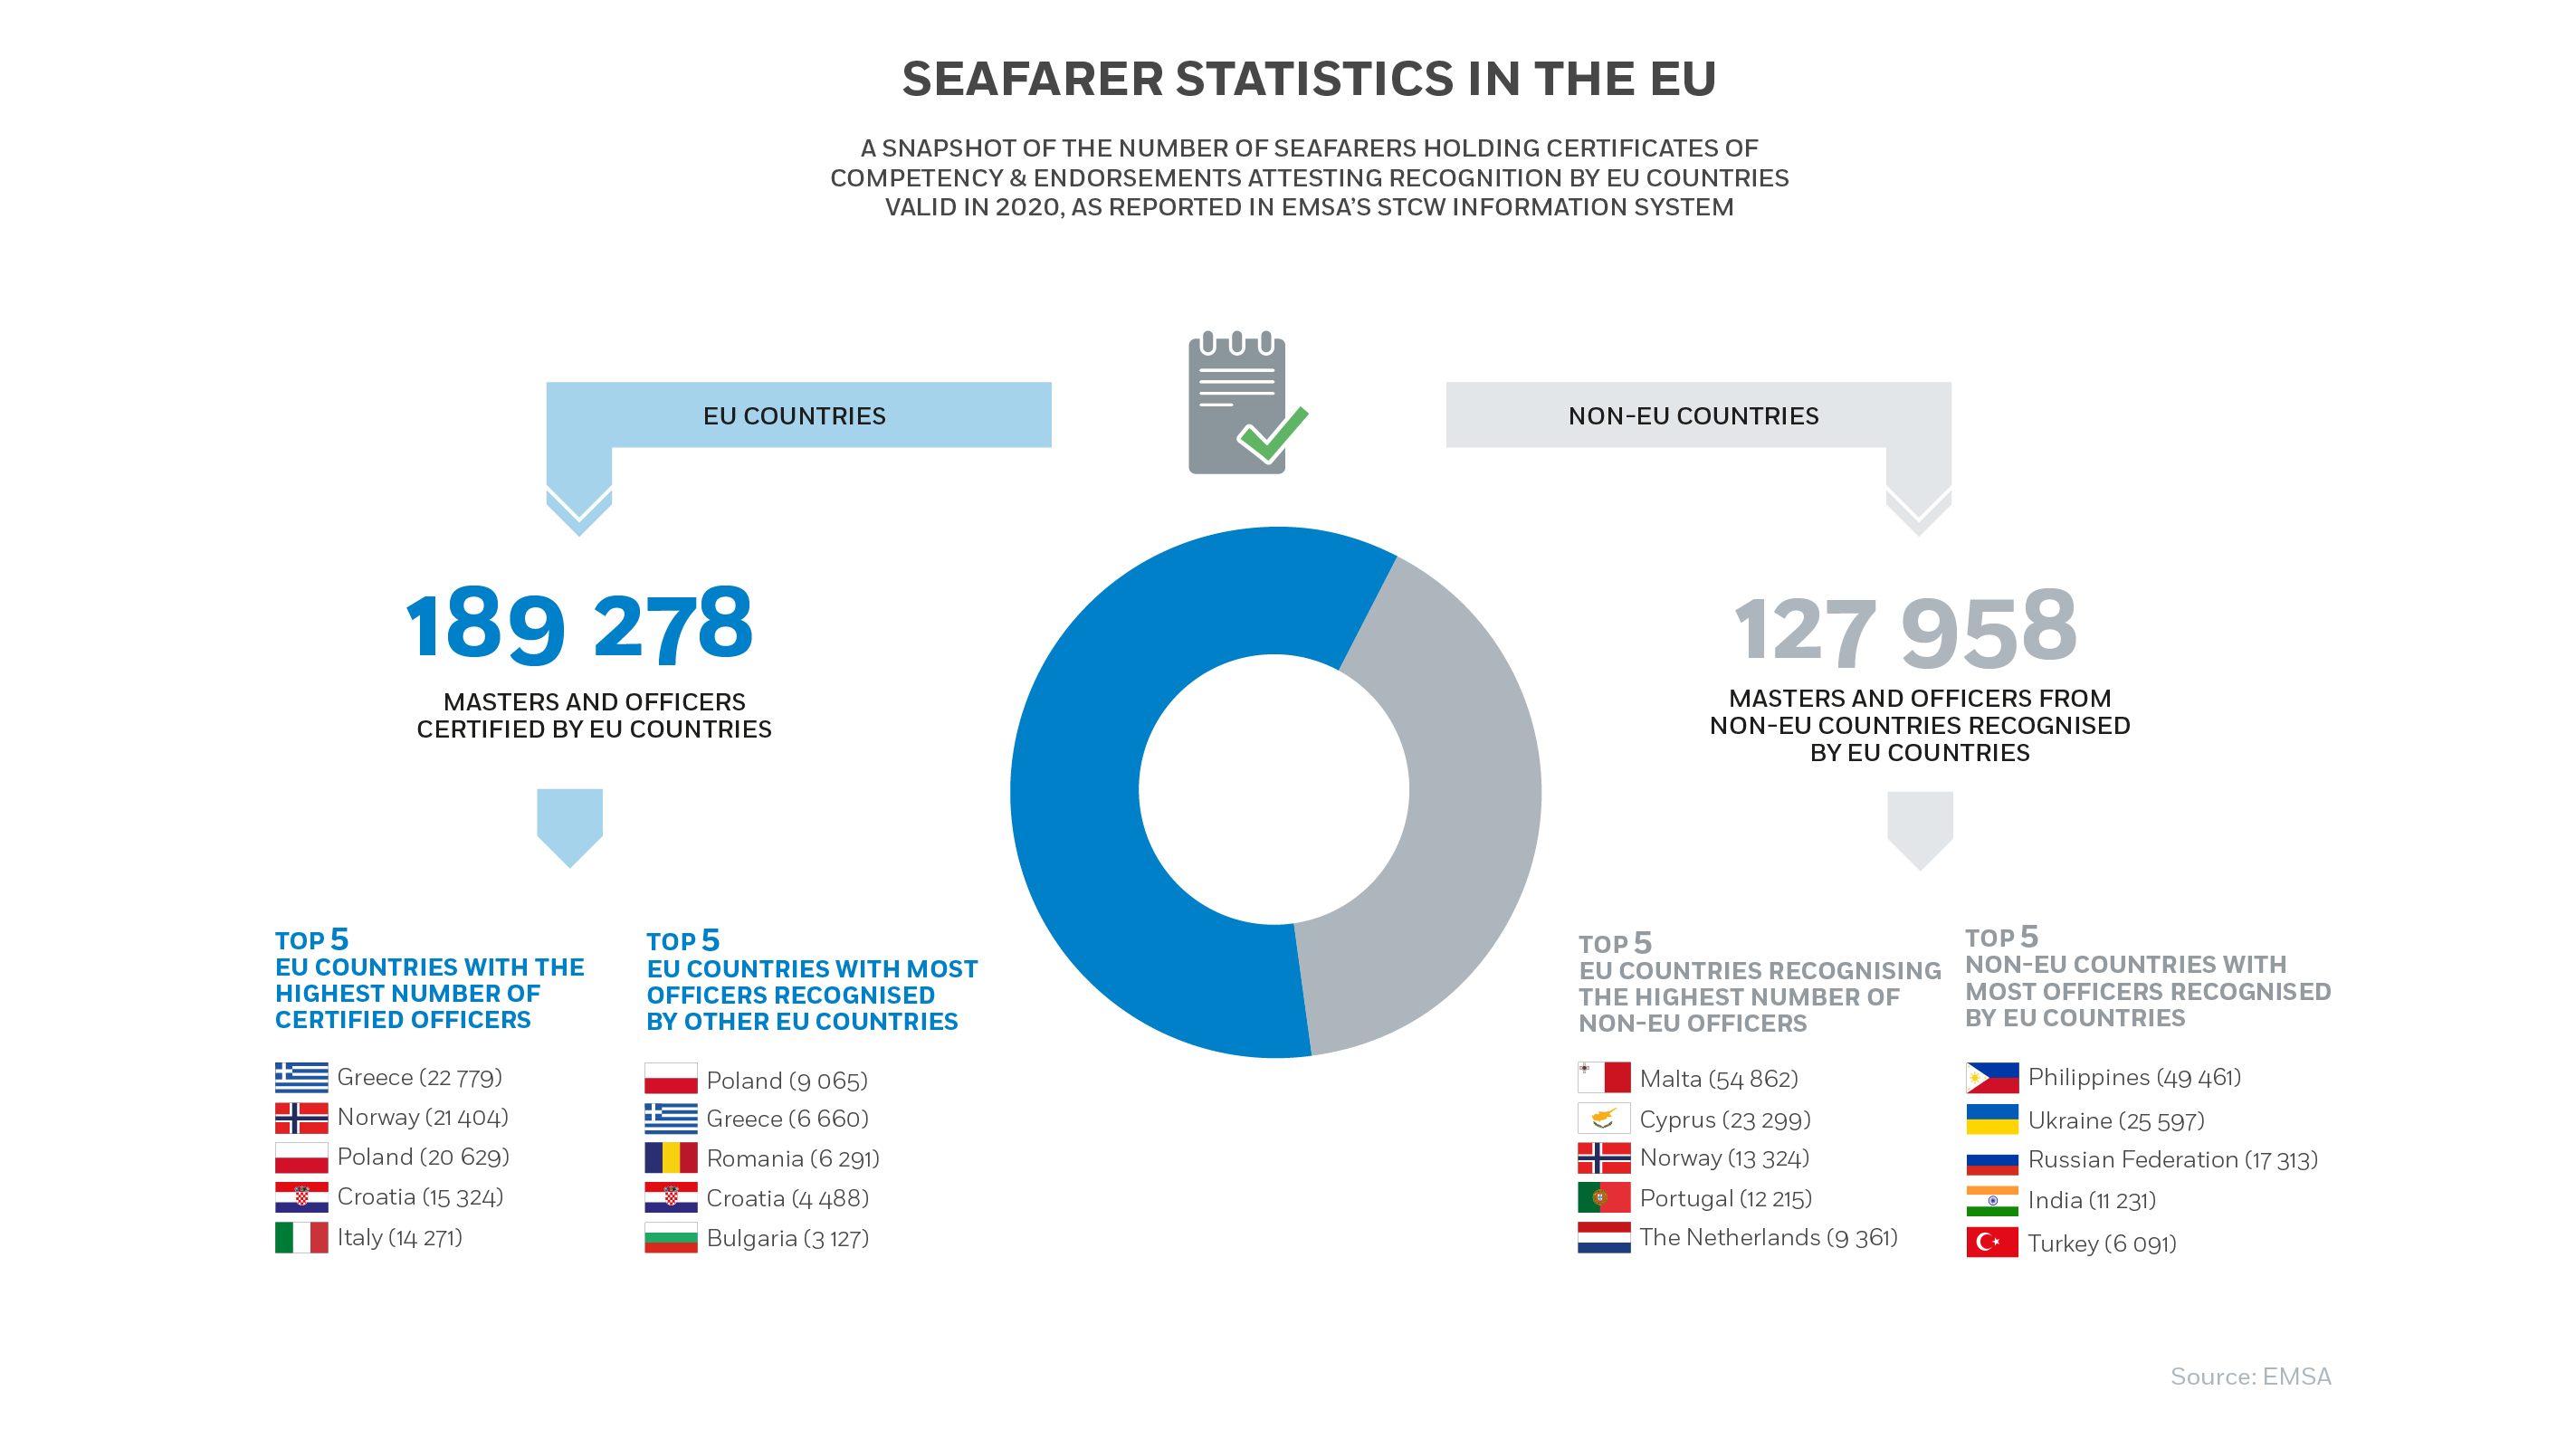 Seafarer Statistics in the EU 2020 Image 1